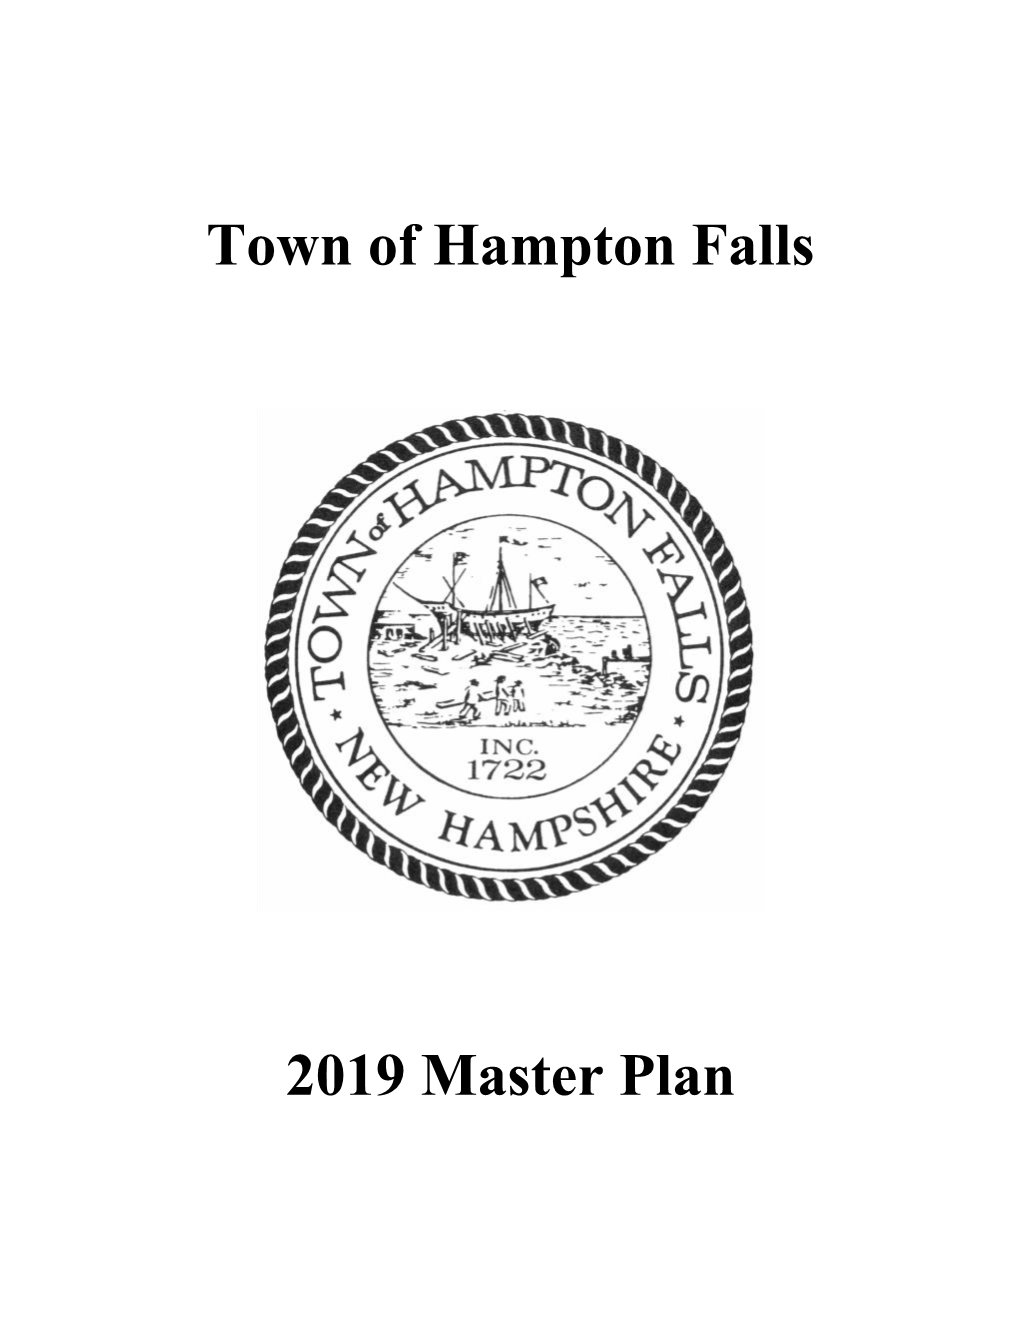 Town of Hampton Falls 2019 Master Plan